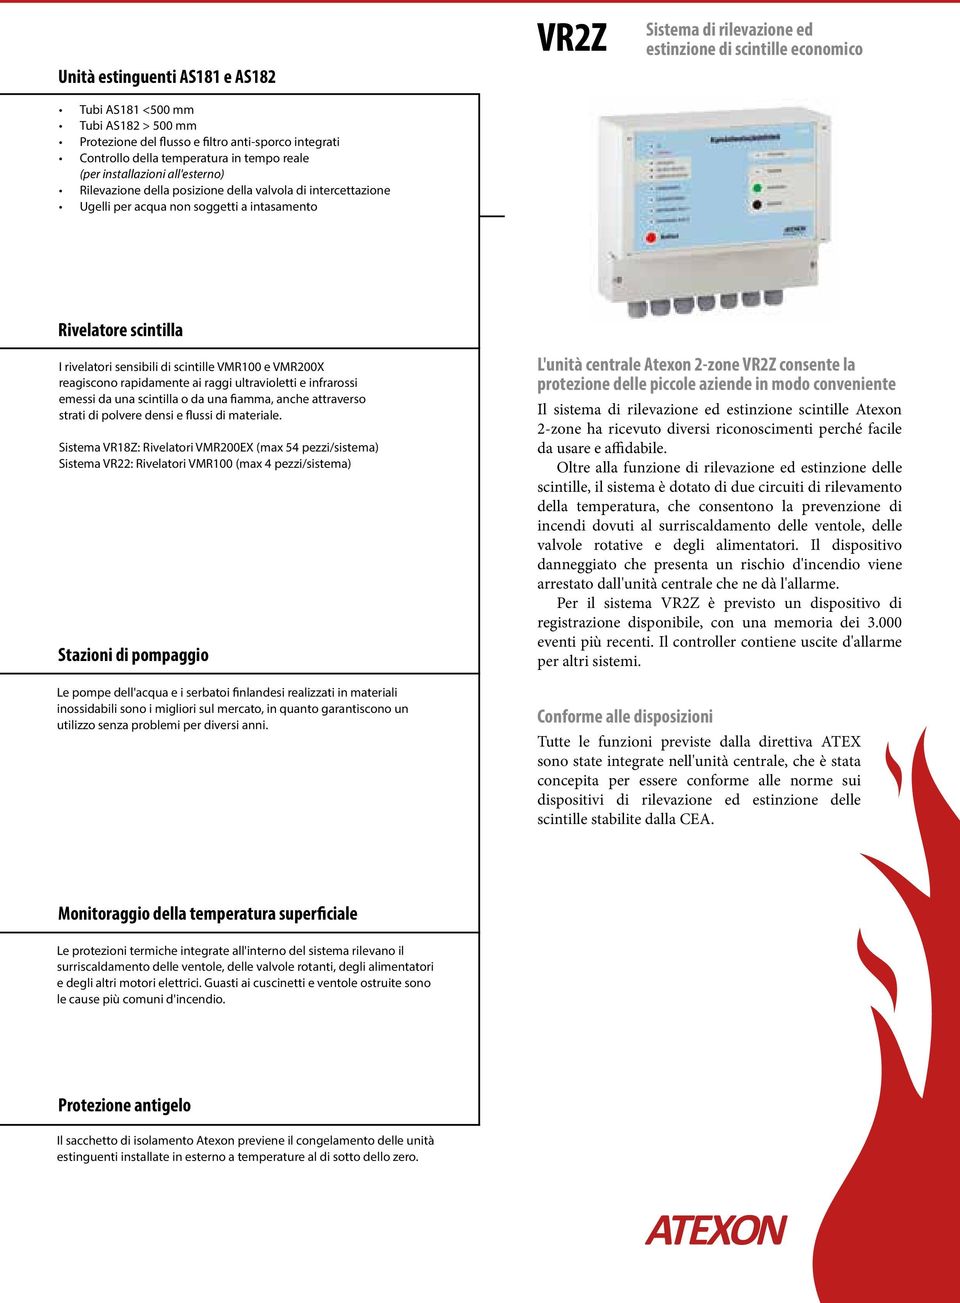 sensibili di scintille VMR100 e VMR200X reagiscono rapidamente ai raggi ultravioletti e infrarossi emessi da una scintilla o da una fiamma, anche attraverso strati di polvere densi e flussi di